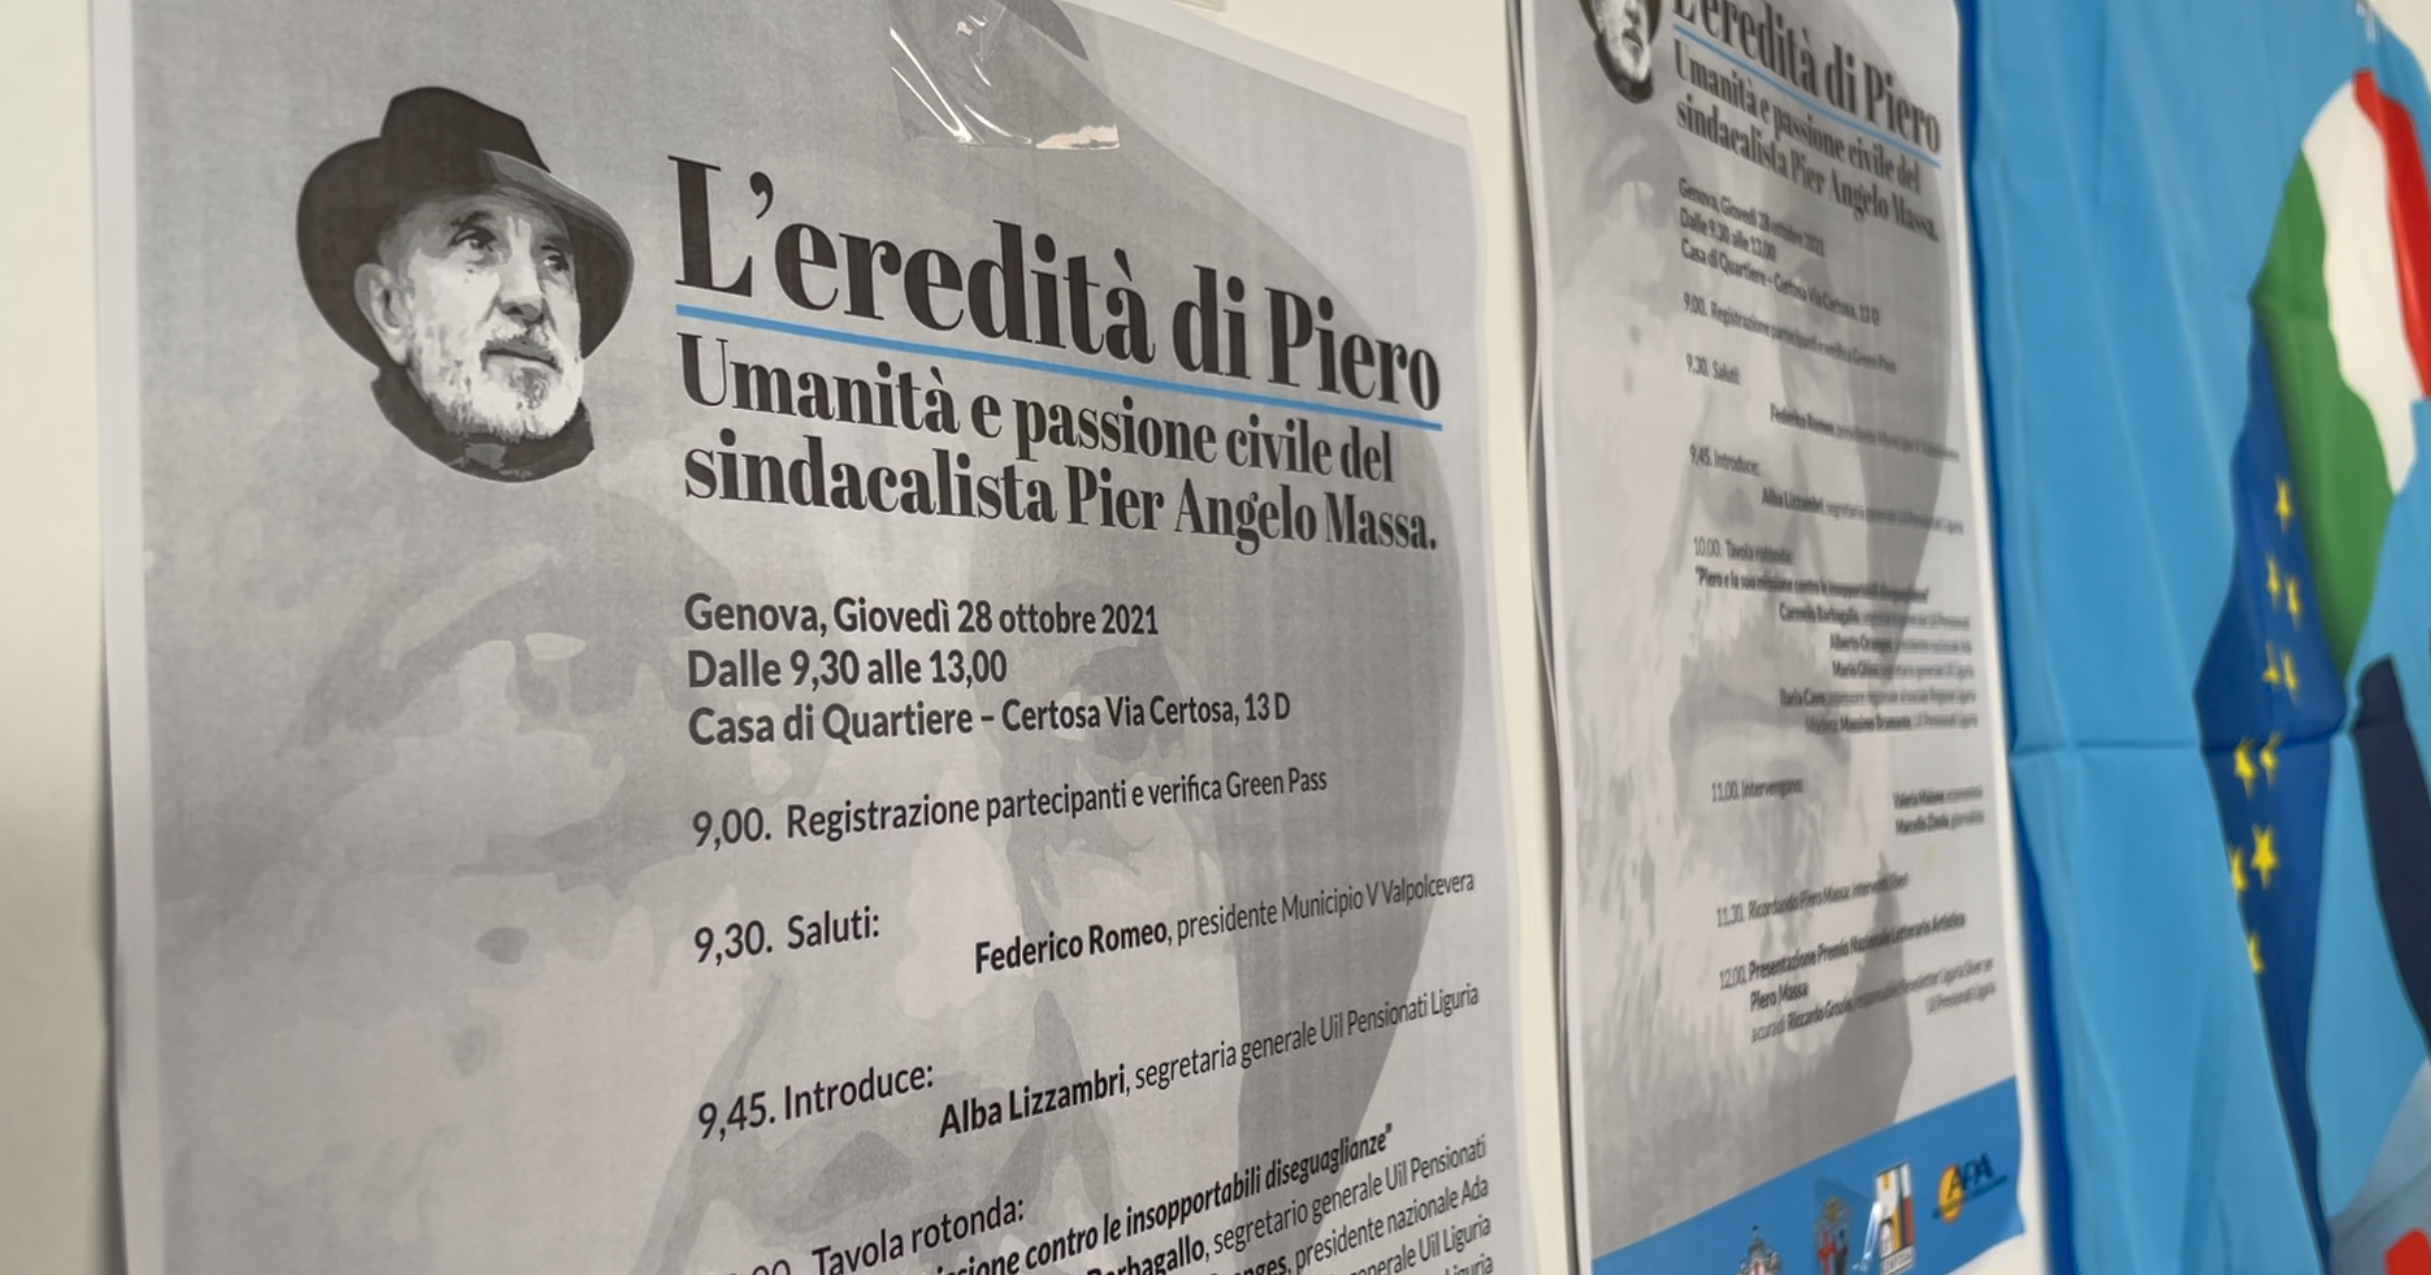 Uil Liguria ricorda Piero Massa con un premio letterario a lui dedicato